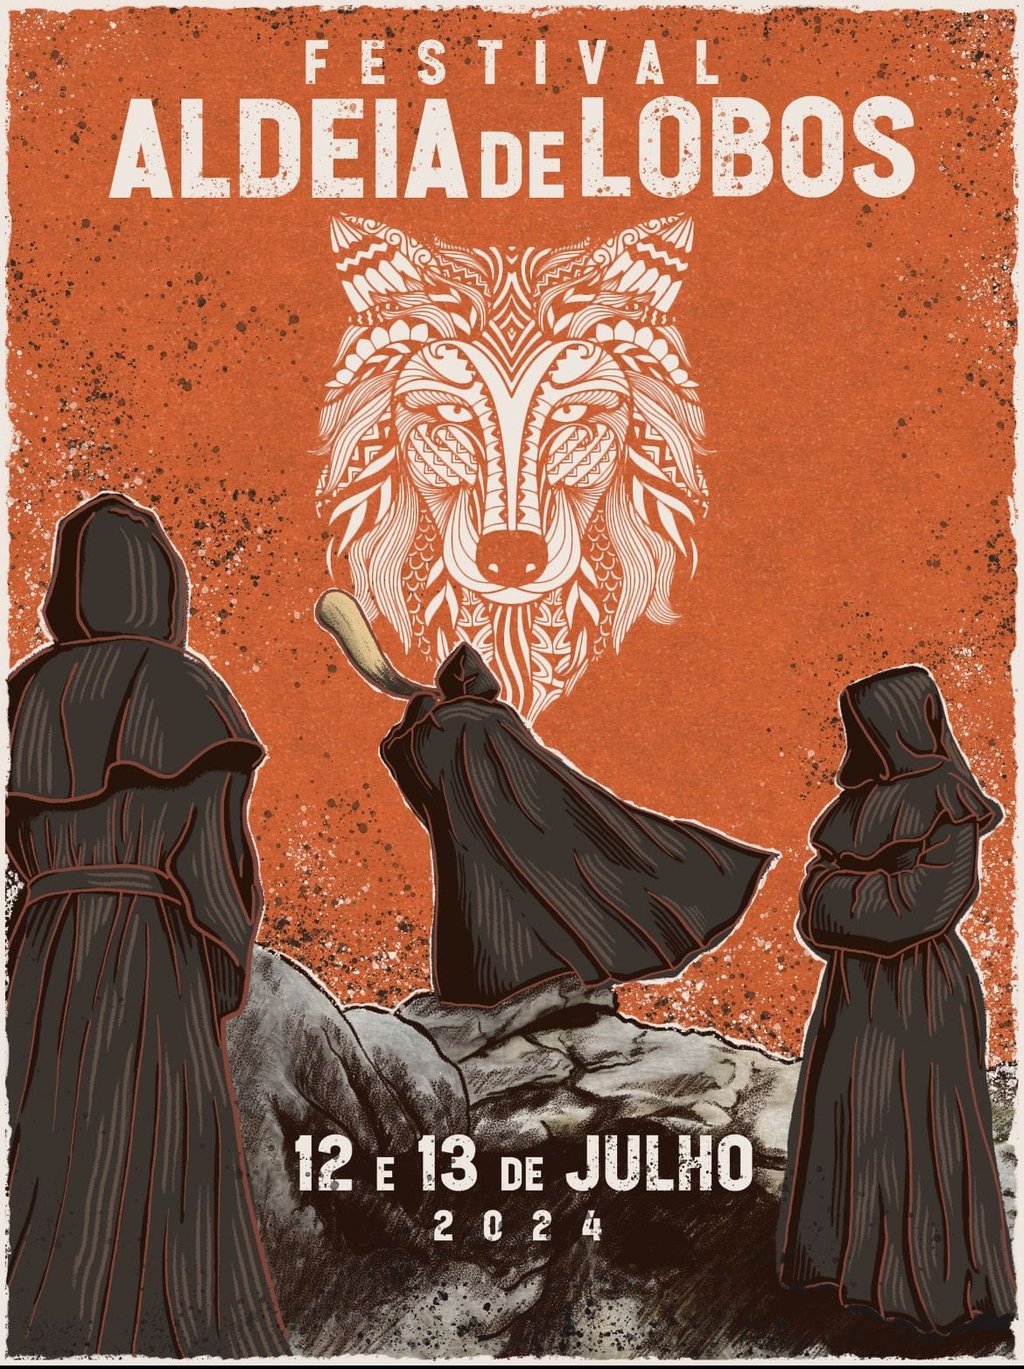 Fafião | IV Festival Aldeia de Lobos